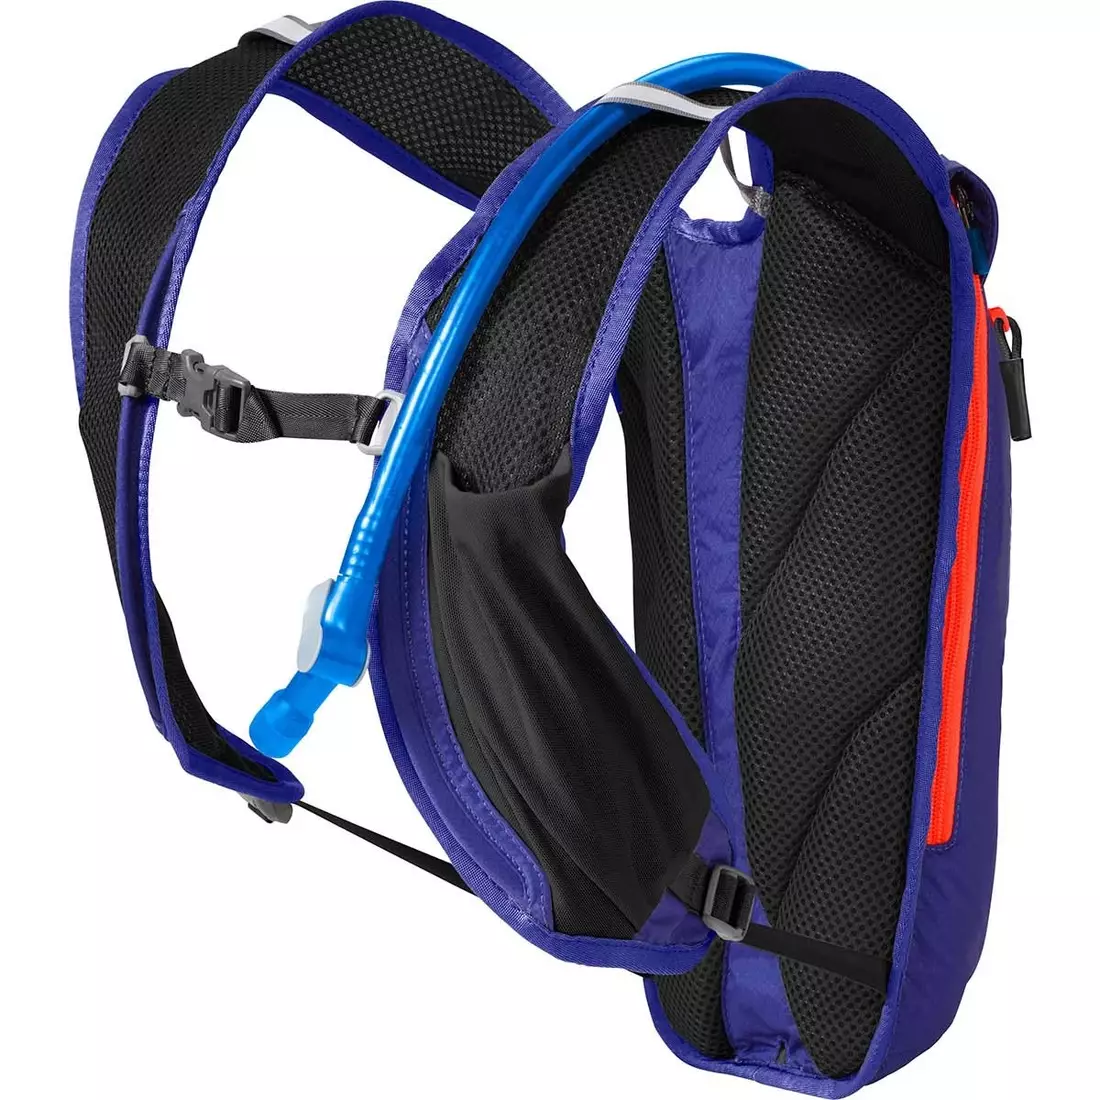 Camelbak SS18 běžecký batoh s vodním měchýřem Octane Dart 50oz /1,5L Lime Punch/Black 1141301900